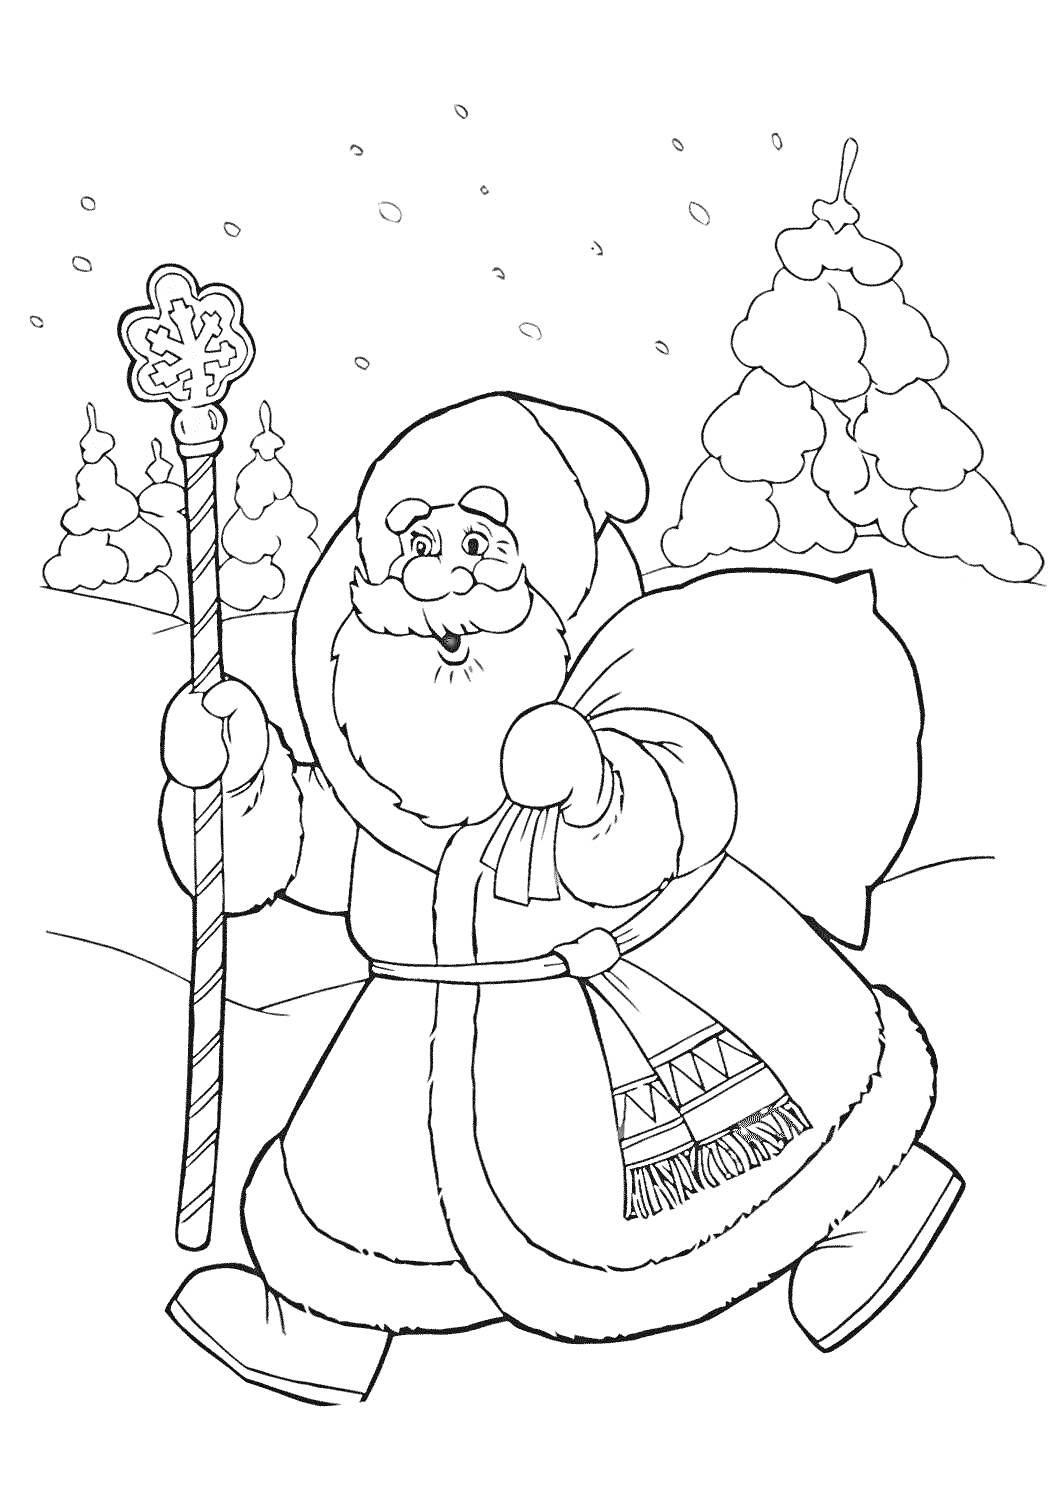 Мороз Иванович с посохом на фоне леса и снега